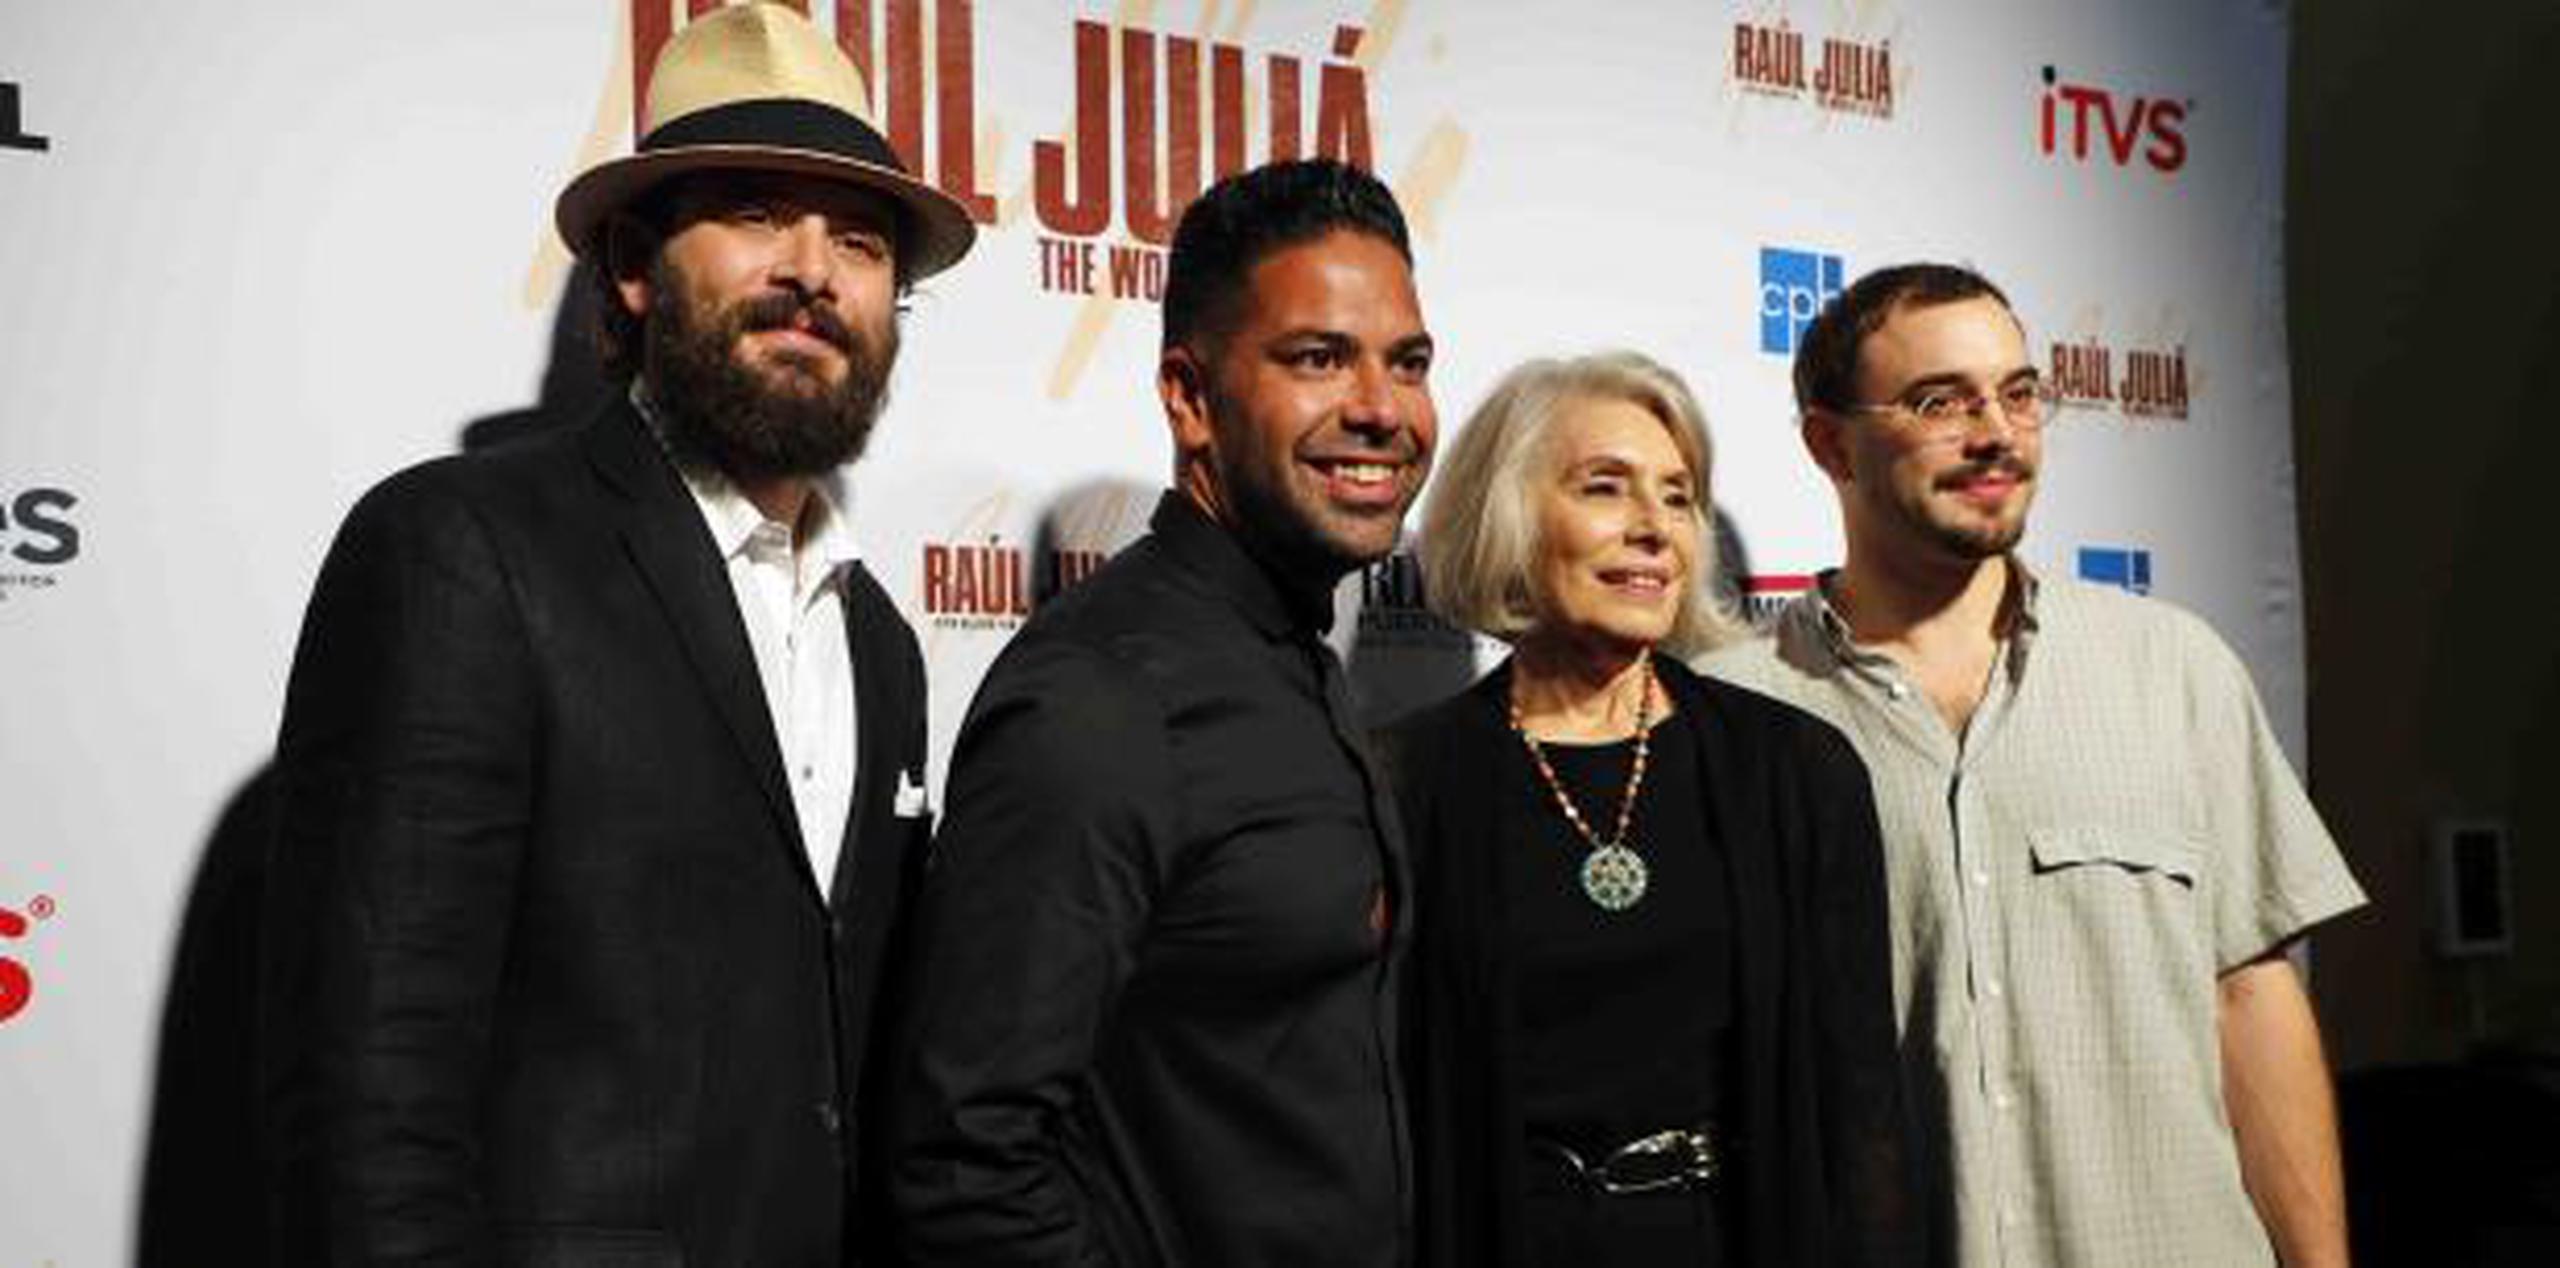 El director del documental, Ben De Jesús (segundo desde la izquierda) junto a la viuda, Merel Juliá, y sus hijos,  Raúl Sigmund y Benjamín Rafael.   (pablo.martínez@gfrmedia.com)